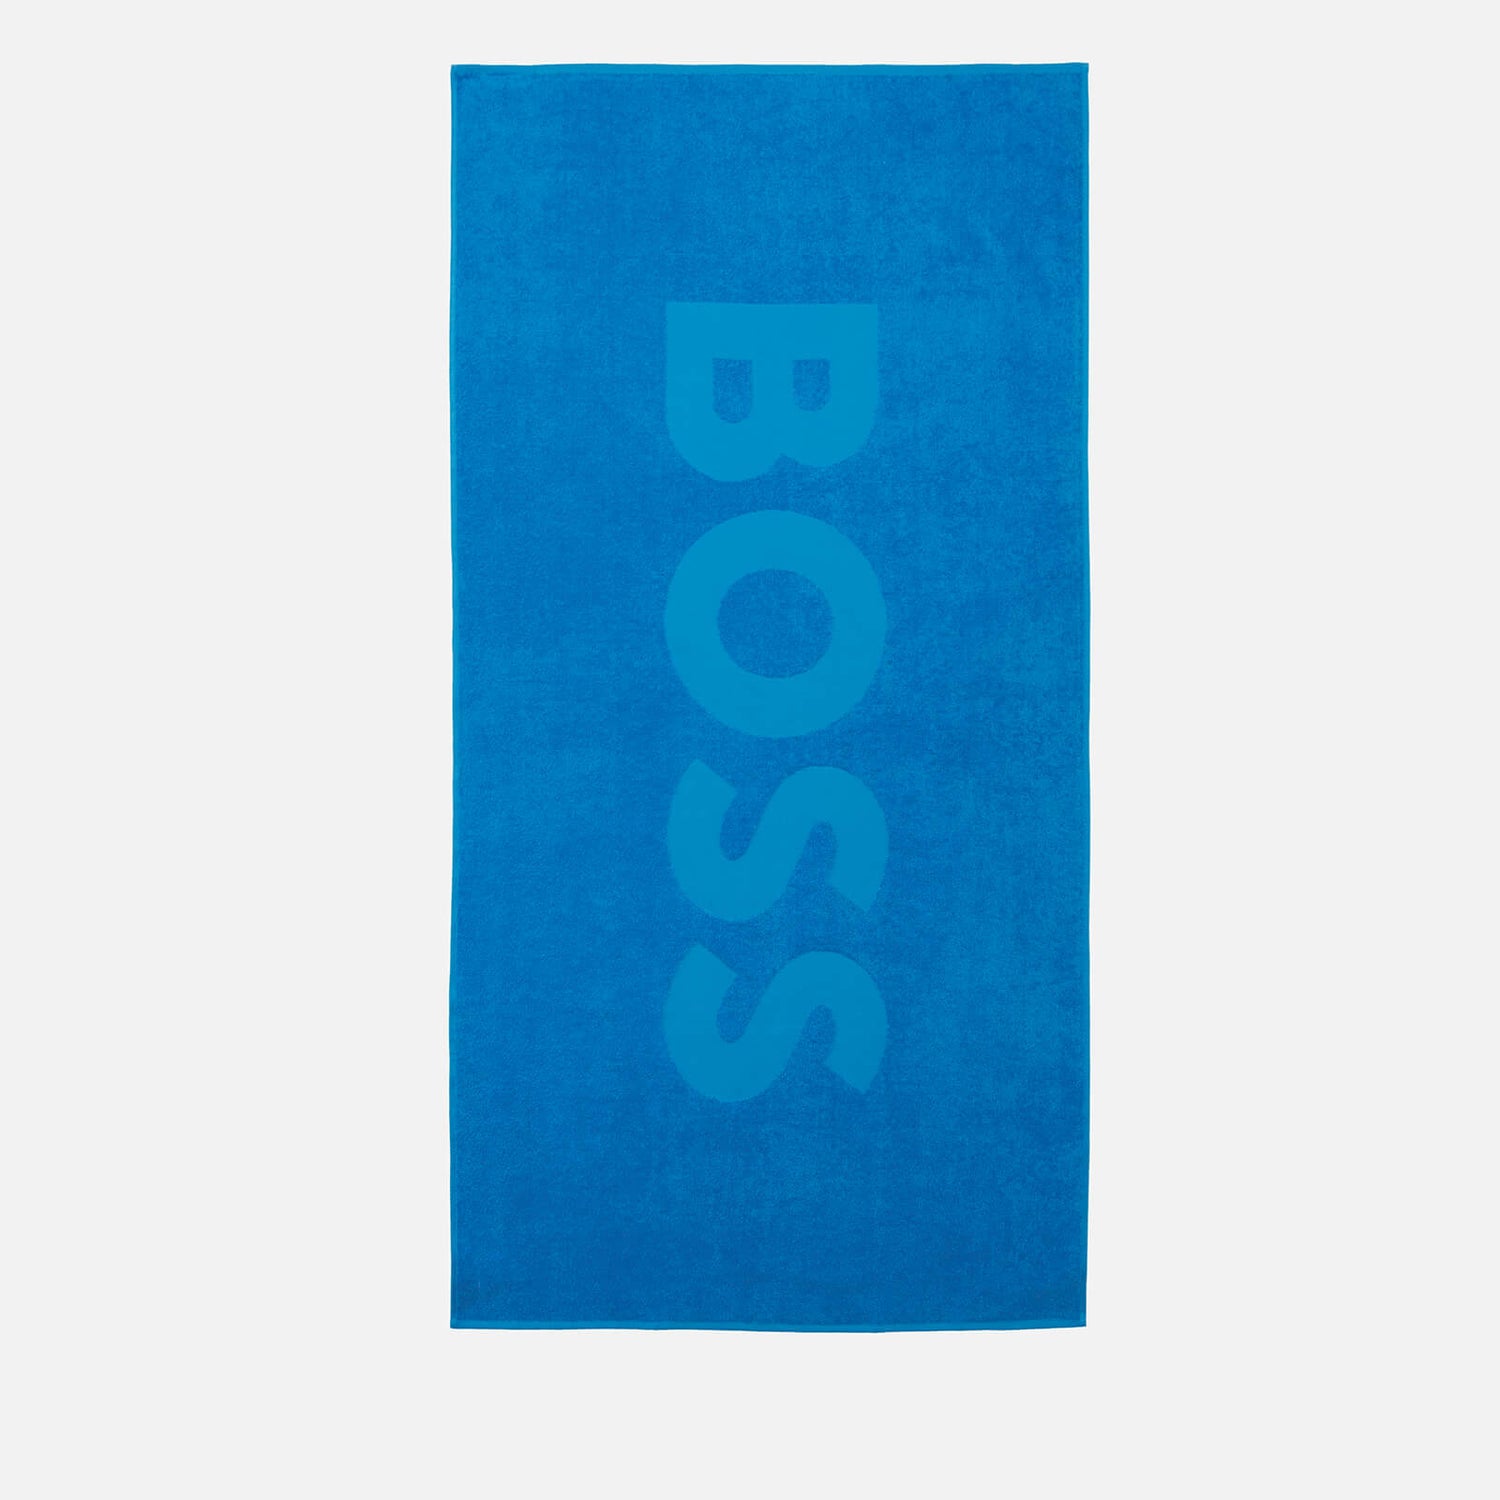 BOSS Bodywear Men's Beach Towel - Bright Blue